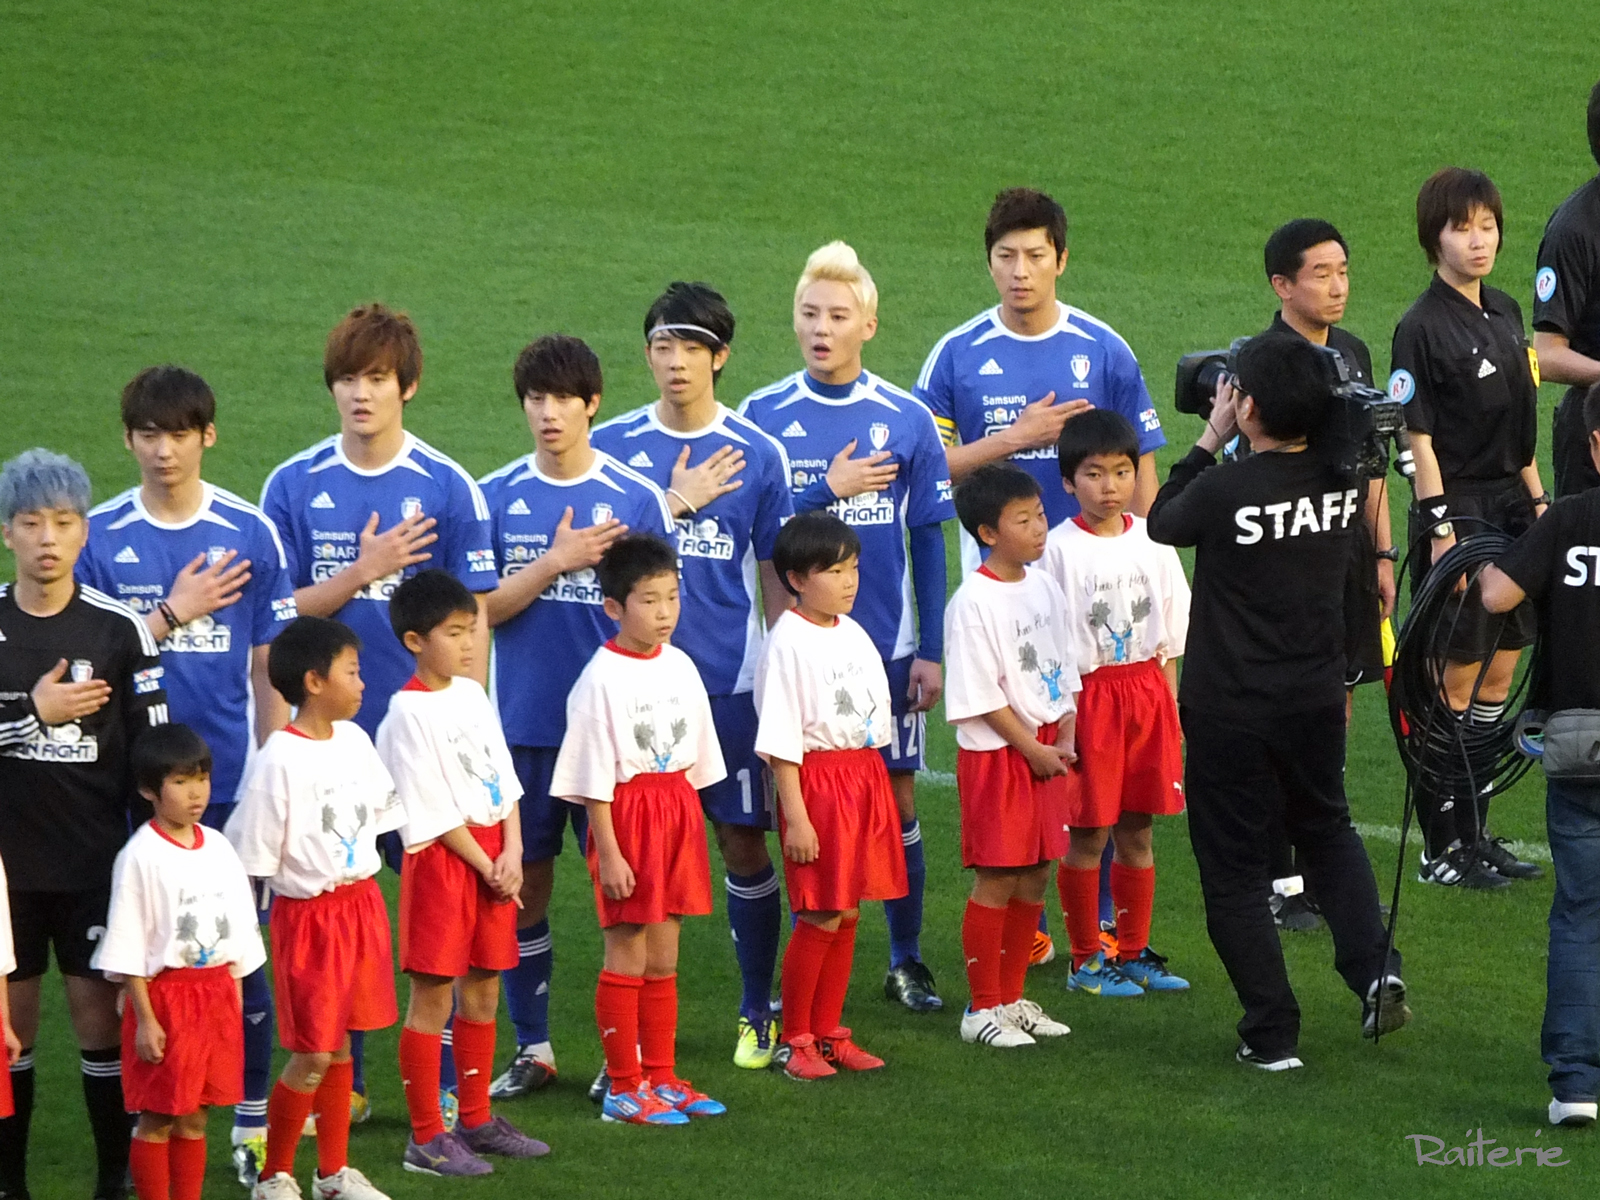 [VID&PIC] 120428 Junsu et le FC Men au match de football caritatif au Japon.   1204300207561488799785097